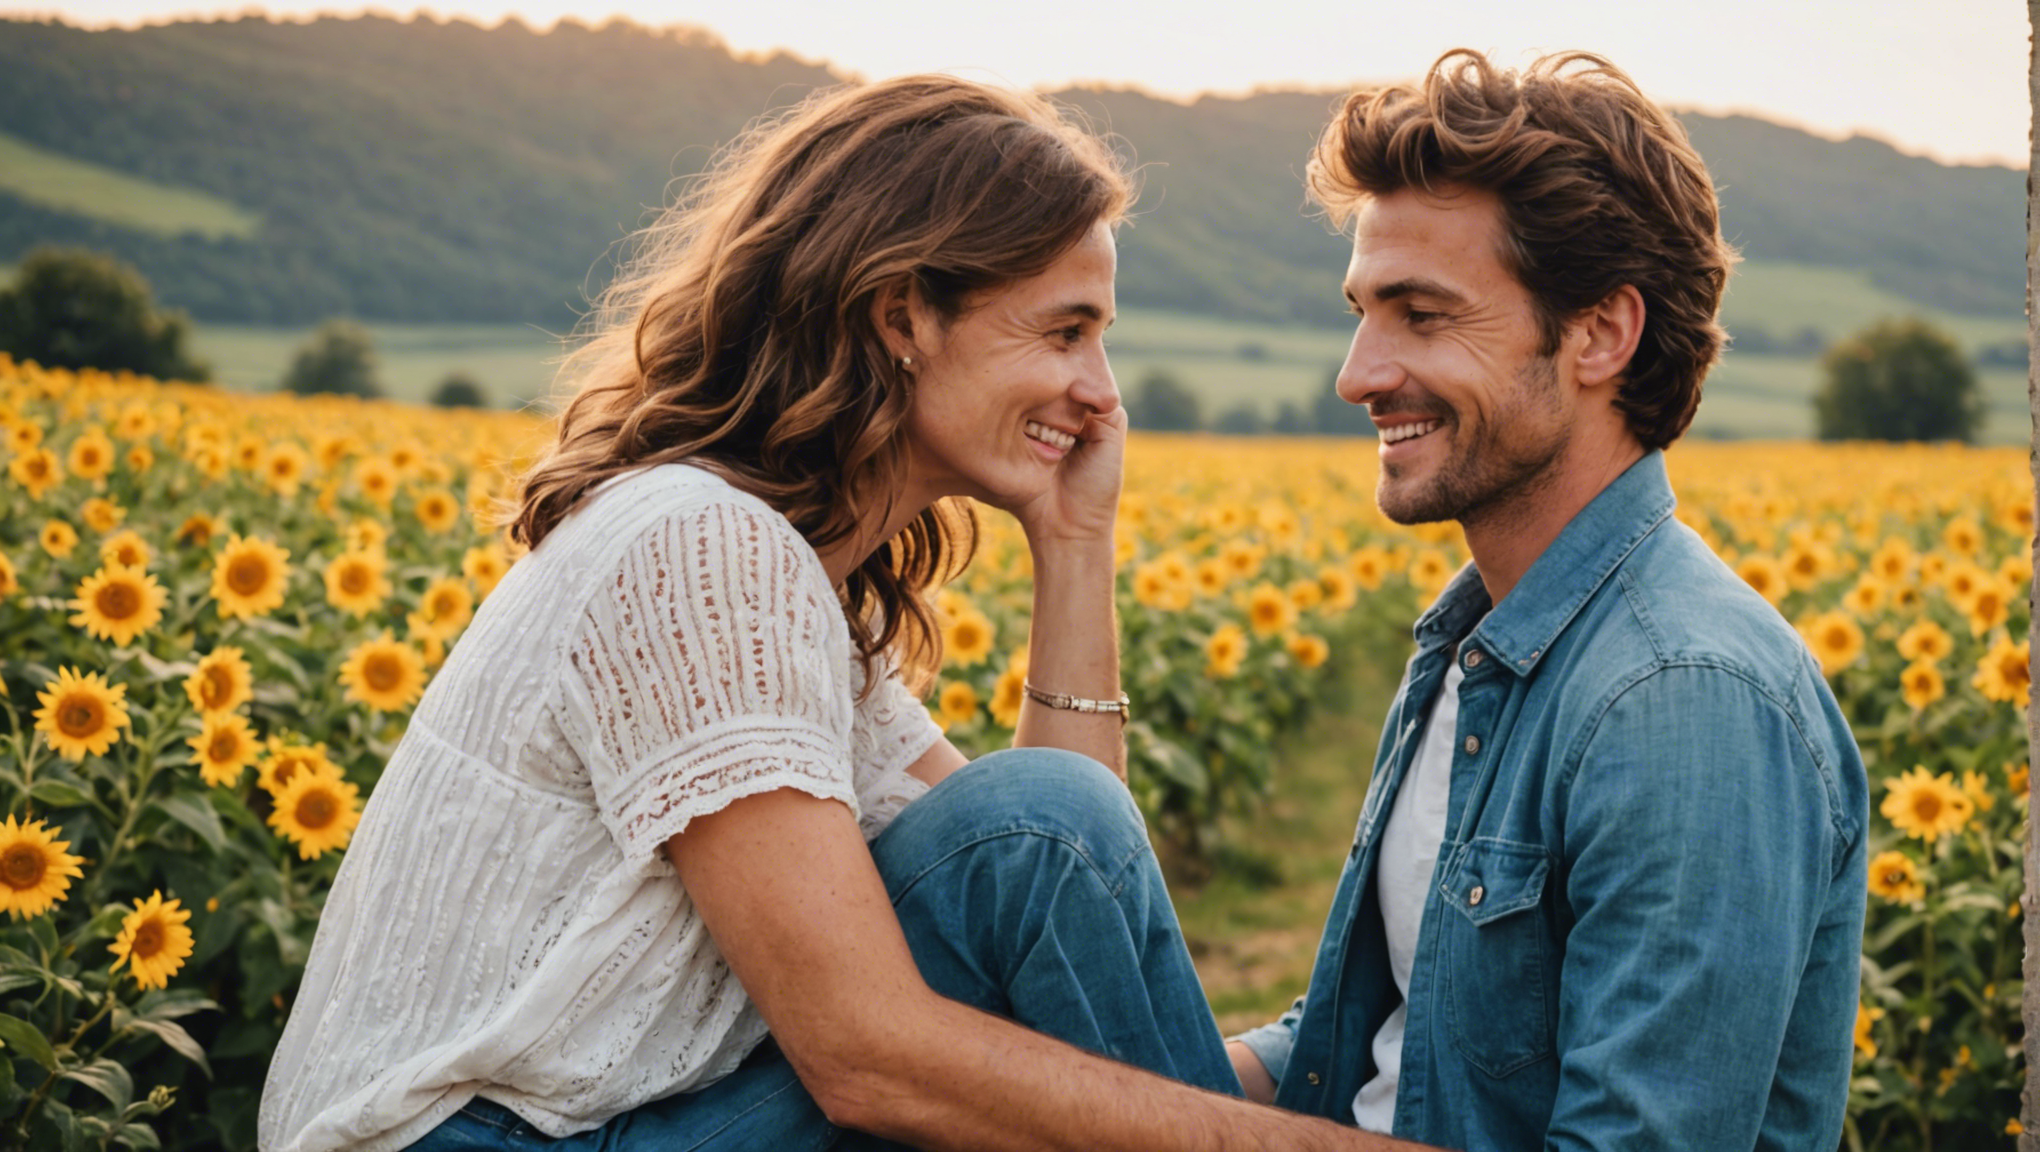 découvrez toutes les clés pour trouver le bonheur dans votre couple et construire une relation épanouissante. conseils et astuces pour cultiver l'harmonie et la complicité dans votre vie à deux.